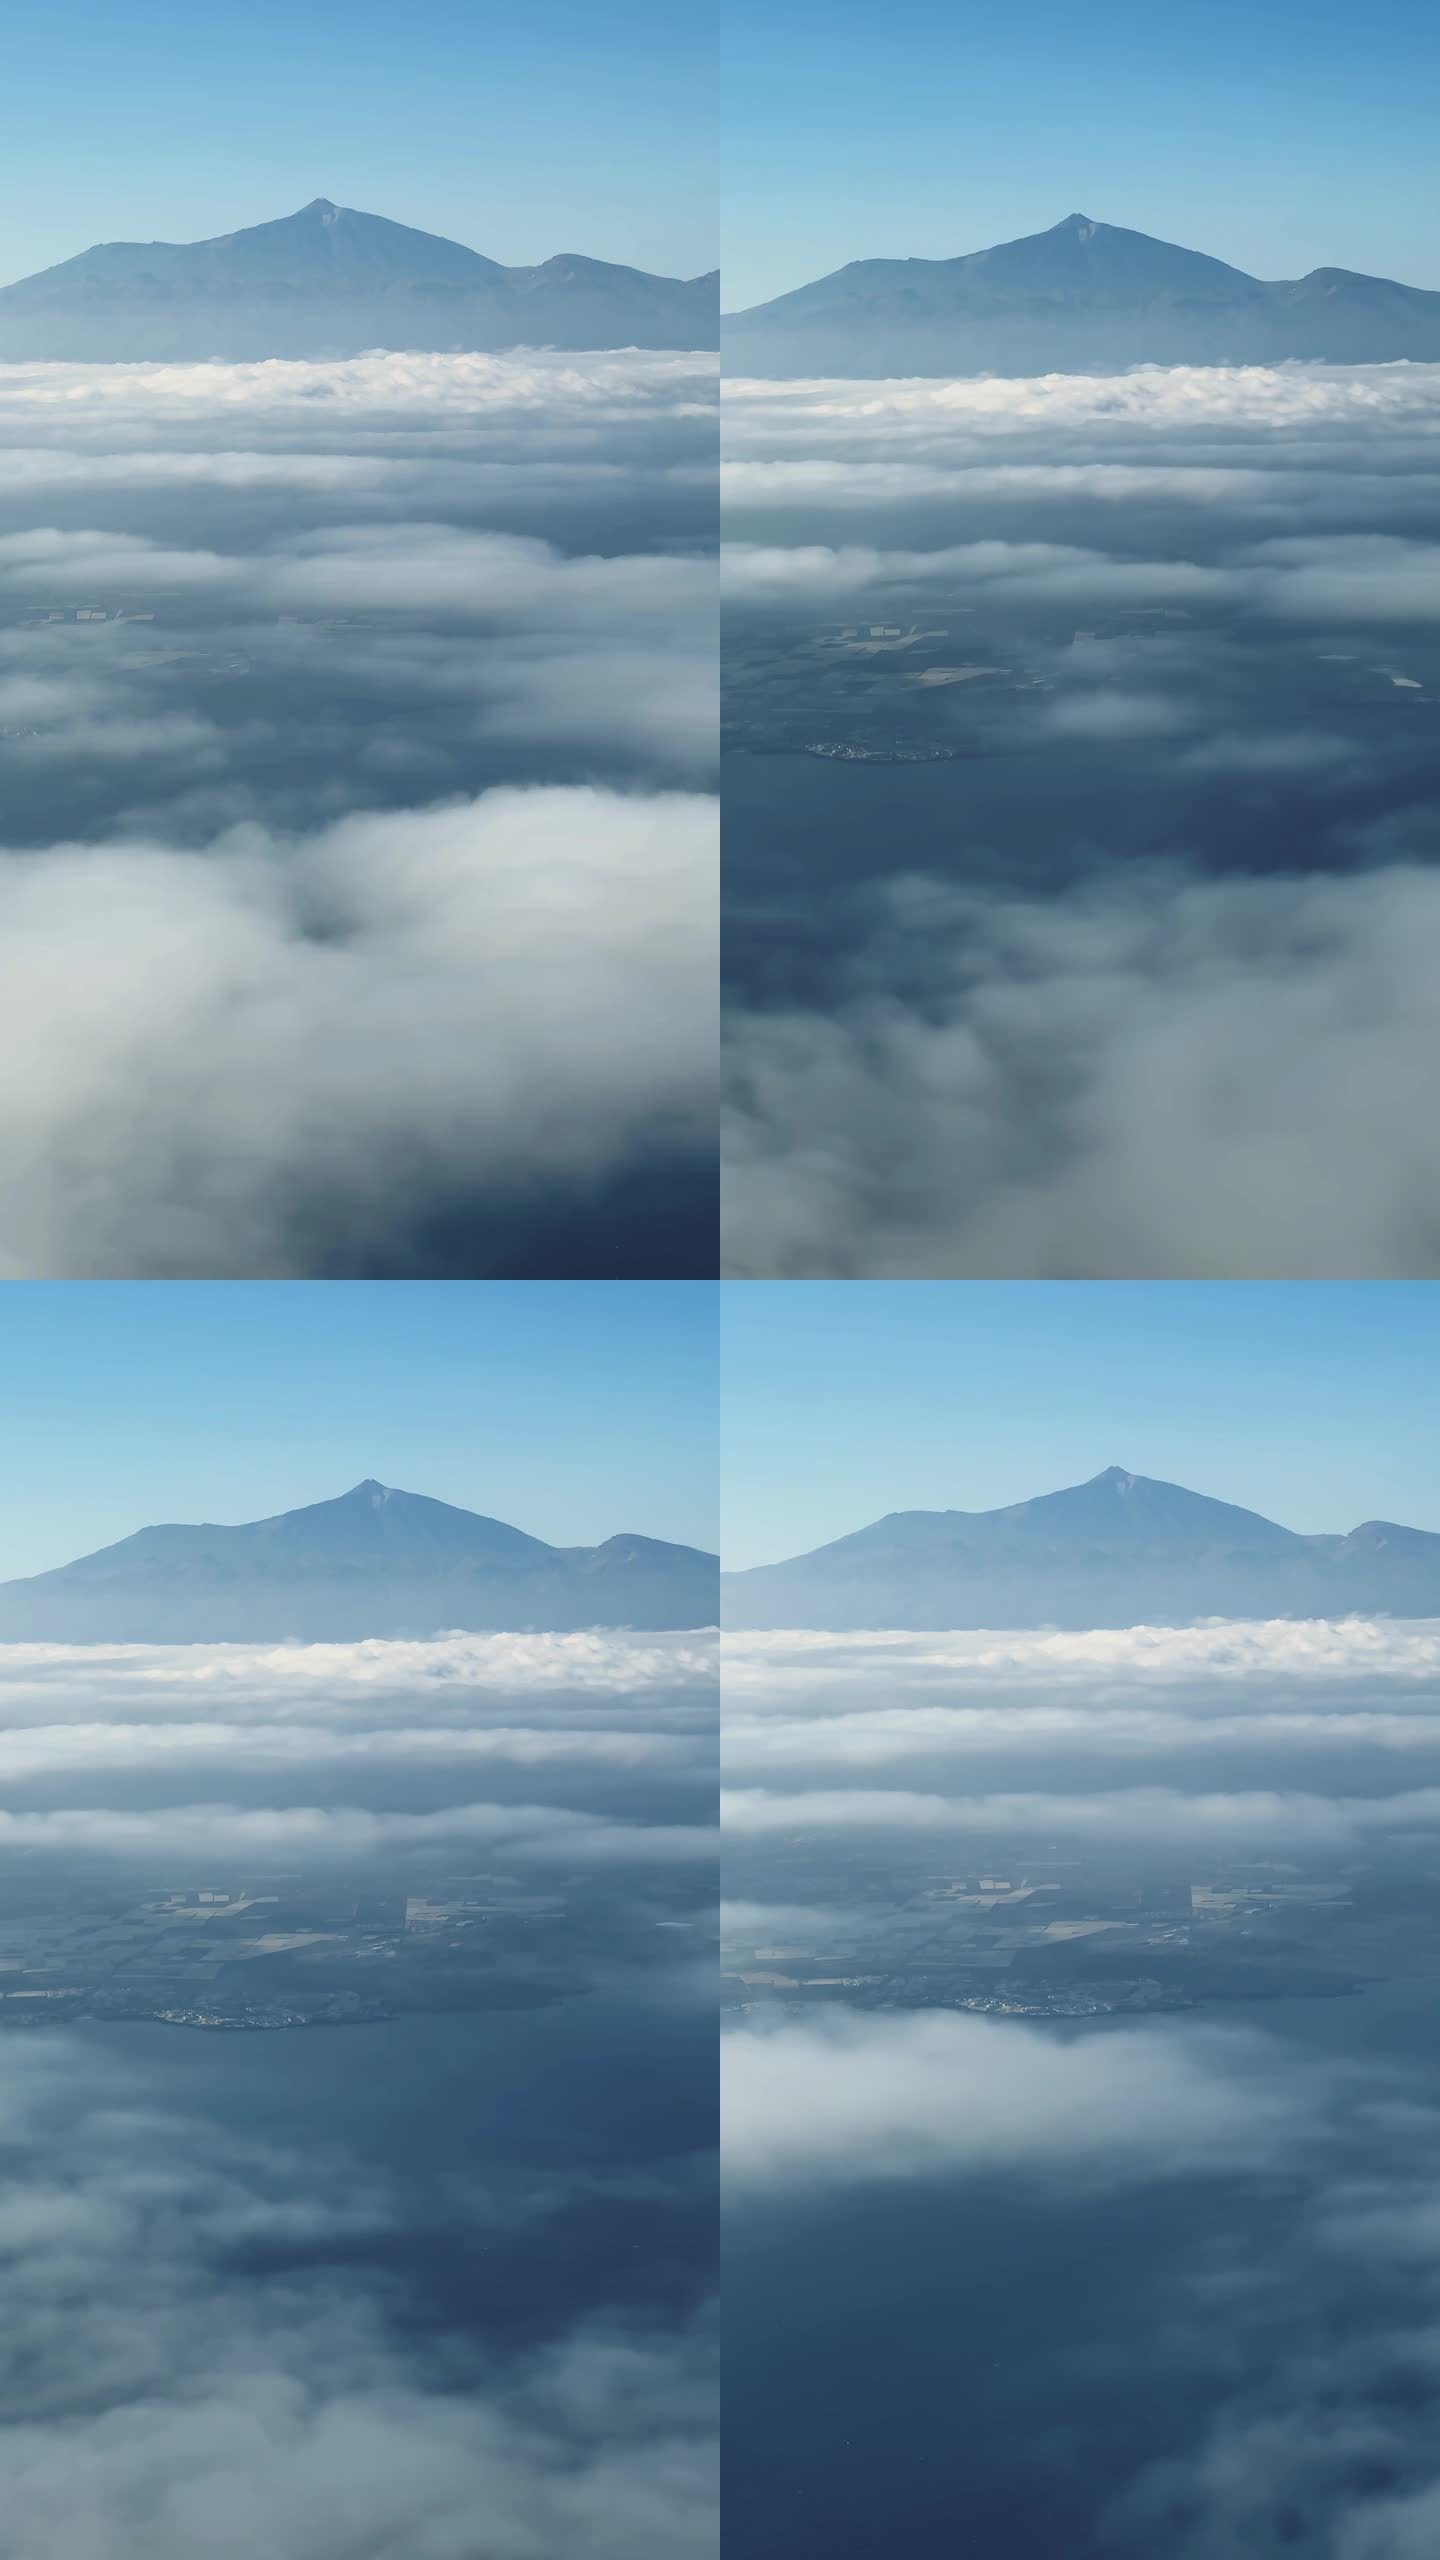 乘客从特内里费岛上空的飞机上看到的景象